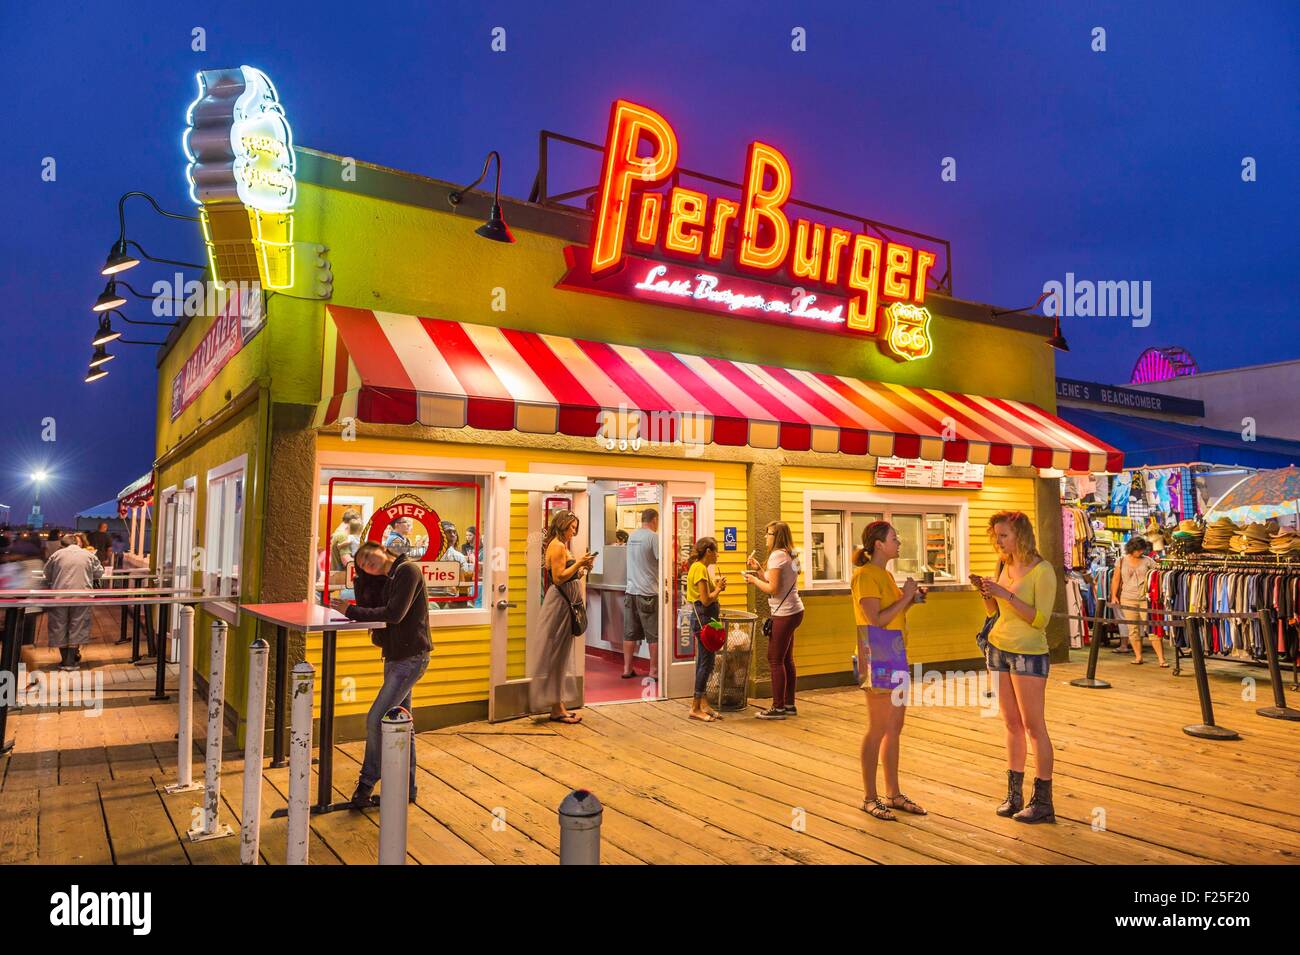 Gli Stati Uniti, California, Los Angeles, Santa Monica, Santa Monica Pier, Pier Burger ristorante Foto Stock